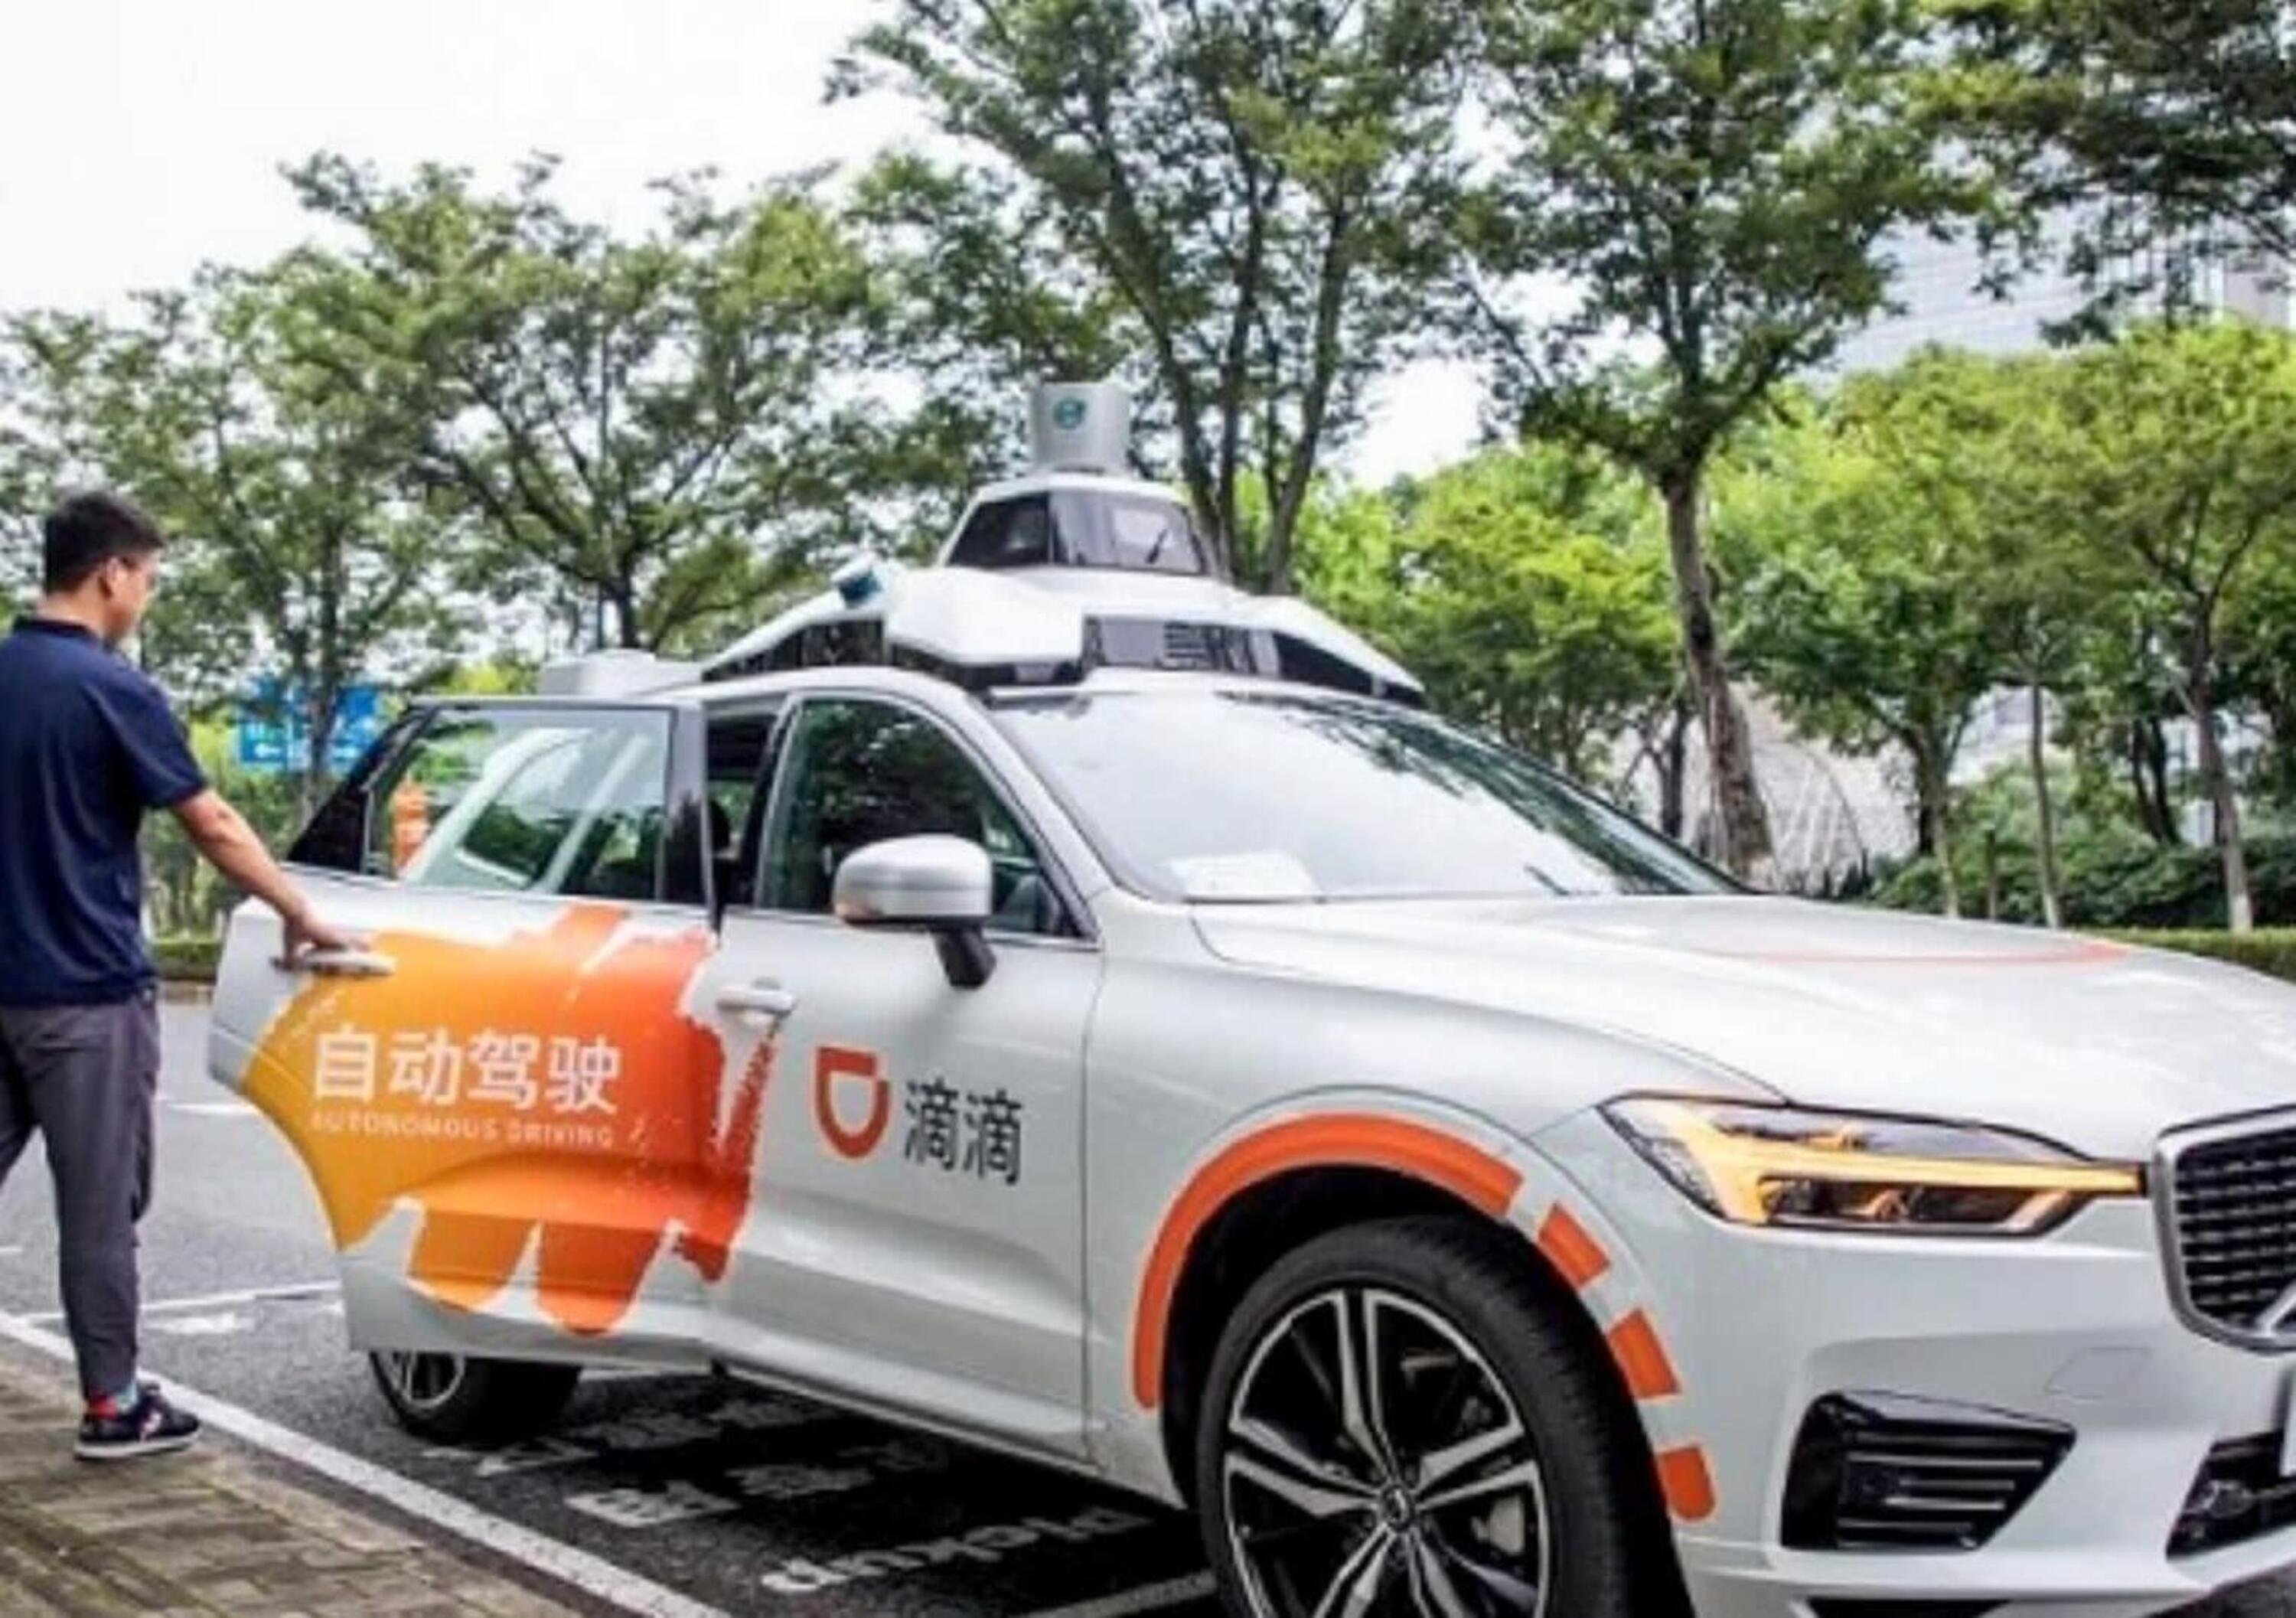 Baidu &egrave; al lavoro per realizzare un&rsquo;auto elettrica (e intelligente) pronta a rivoluzionare il settore